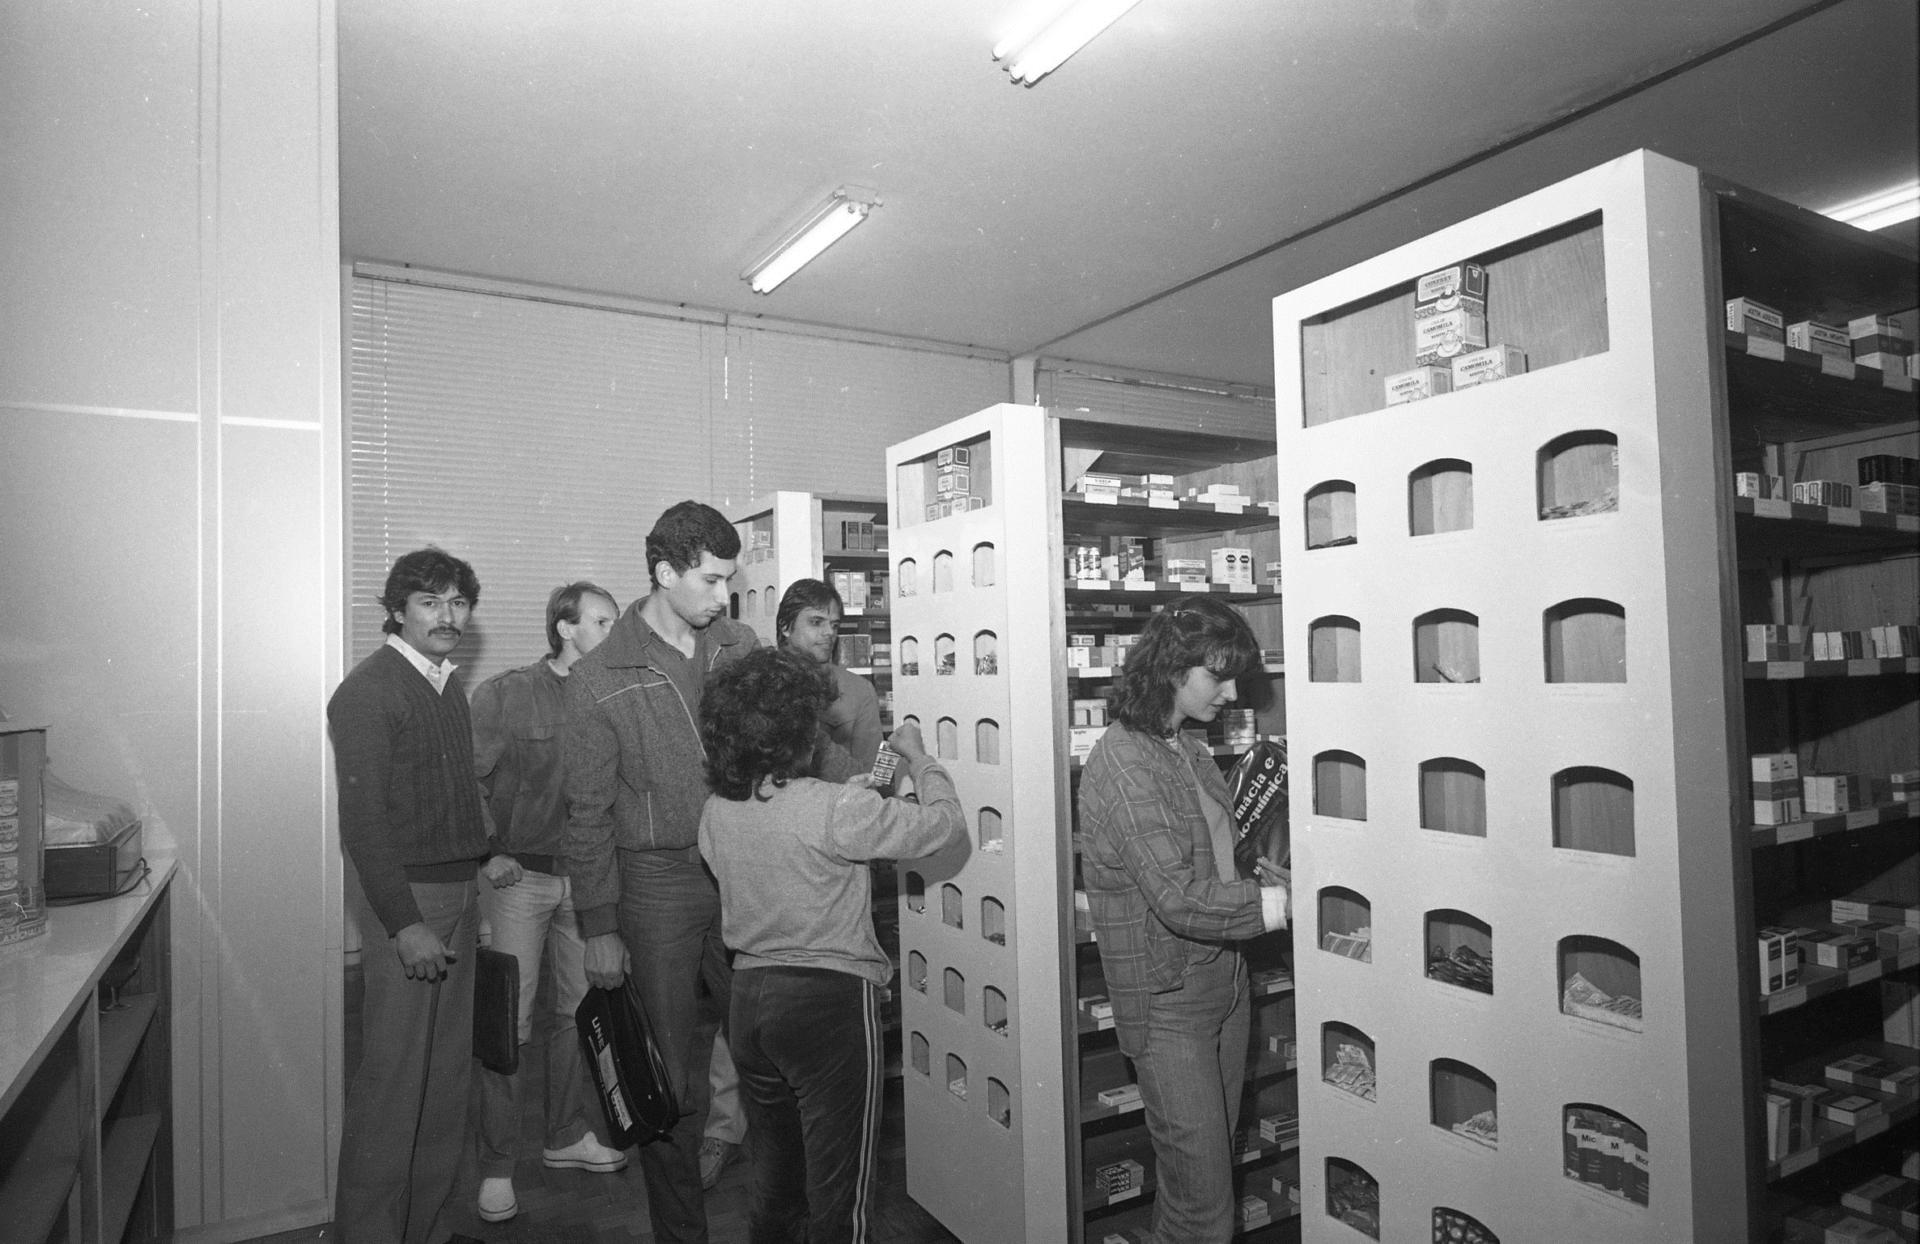 Fotografia horizontal preto e branca da Inauguração da Farmácia-escola. Em ambiente fechado, 6 pessoas estão próximas a 3 estantes com caixas de remédios expostos. Uma delas manipula uma cartela de comprimidos.